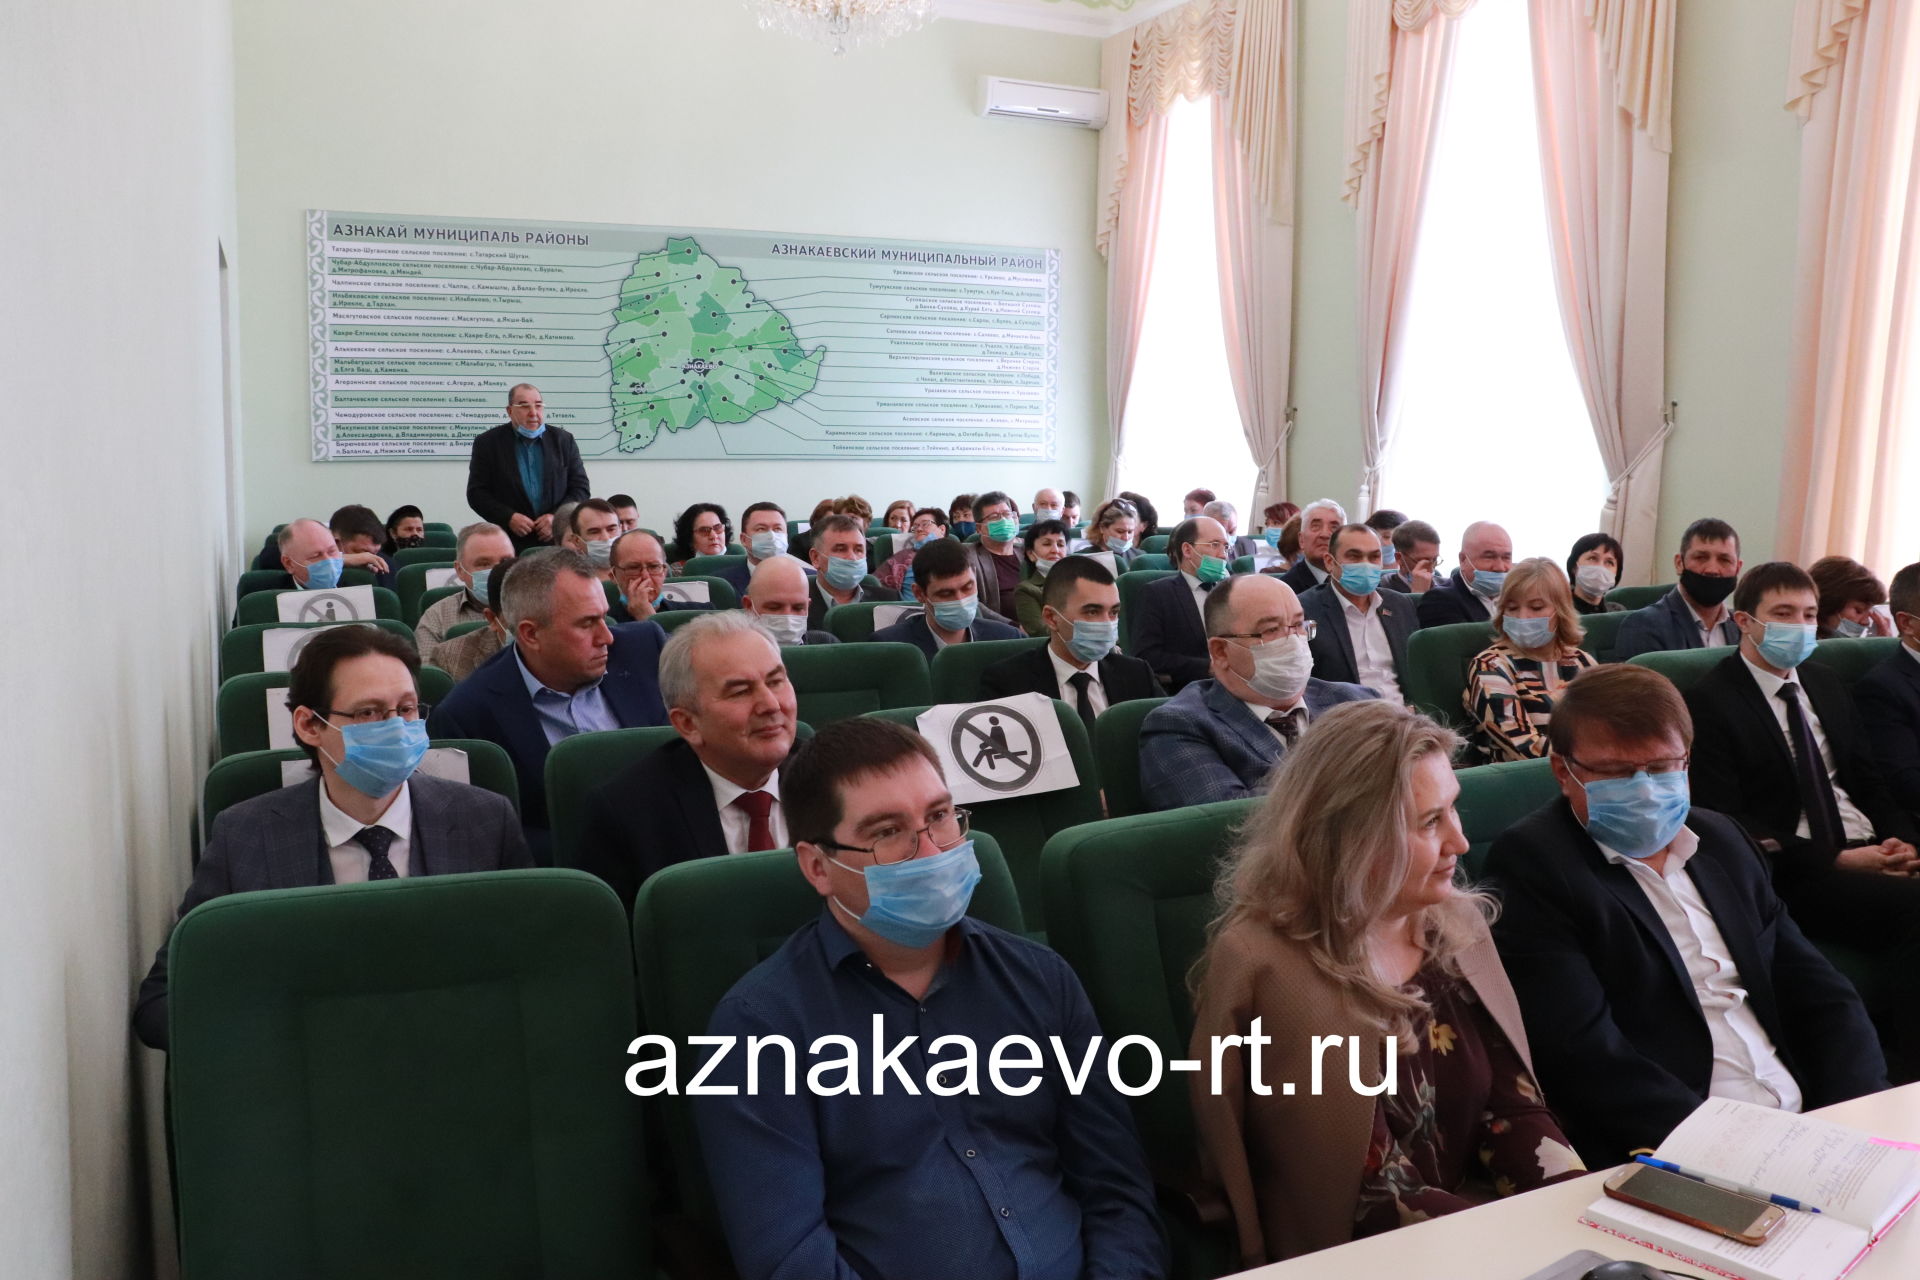 Назначен новый руководитель исполнительного комитета города Азнакаево